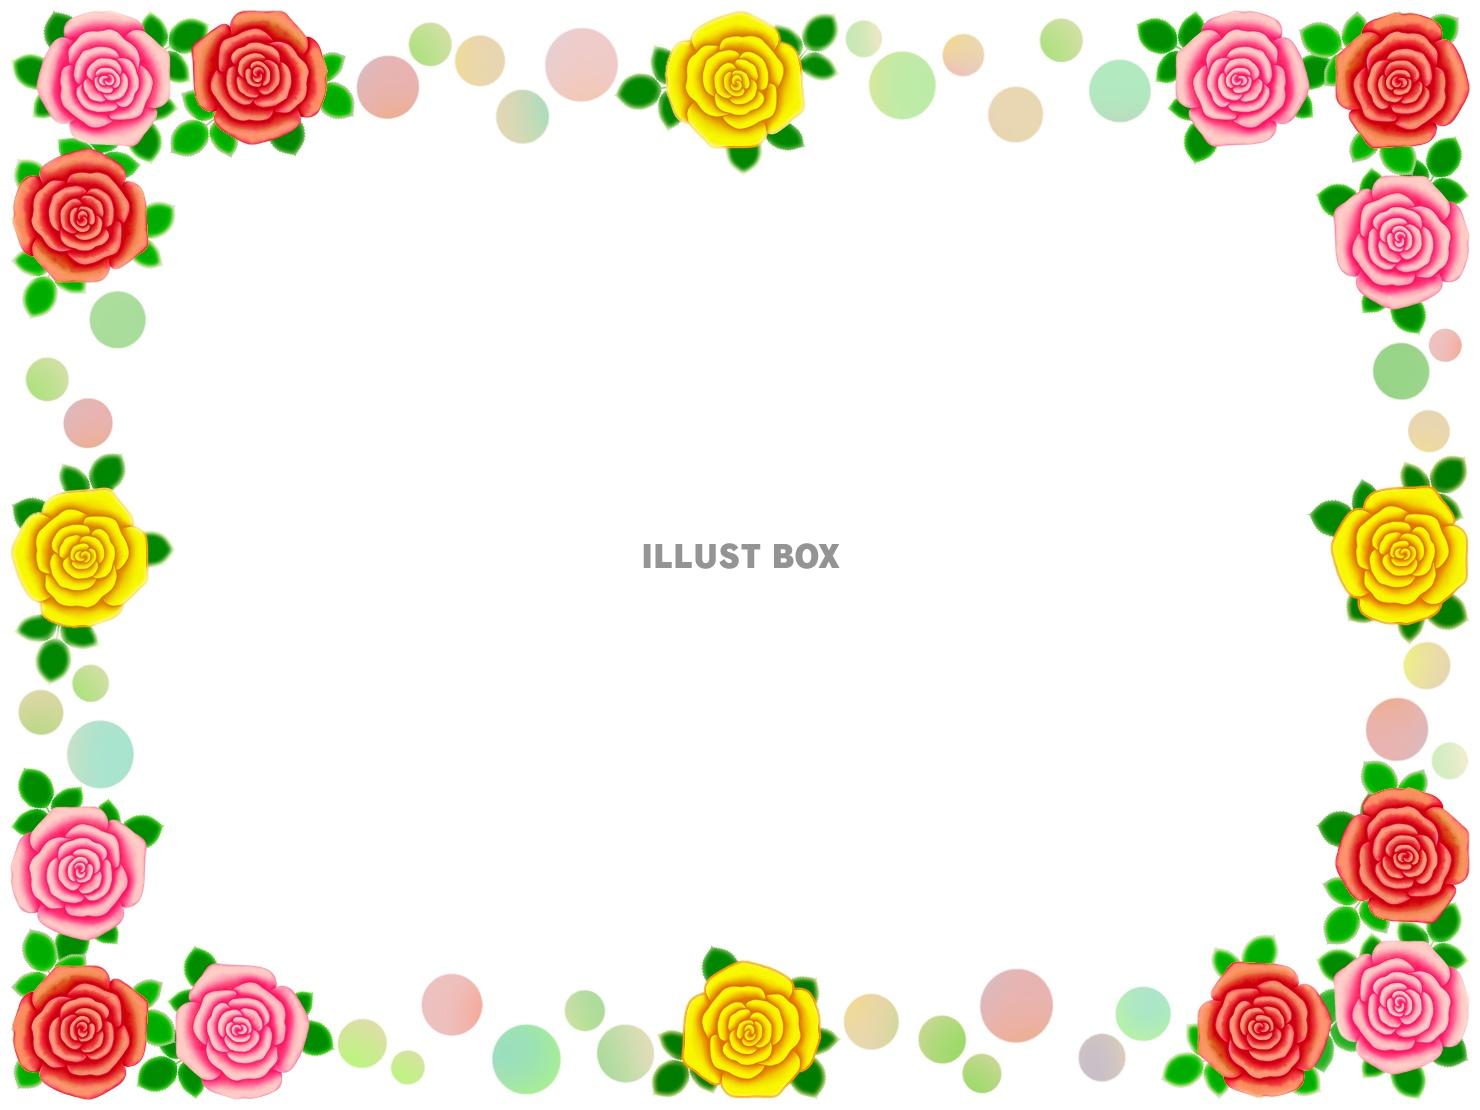 薔薇の花フレーム花模様飾り枠素材イラスト